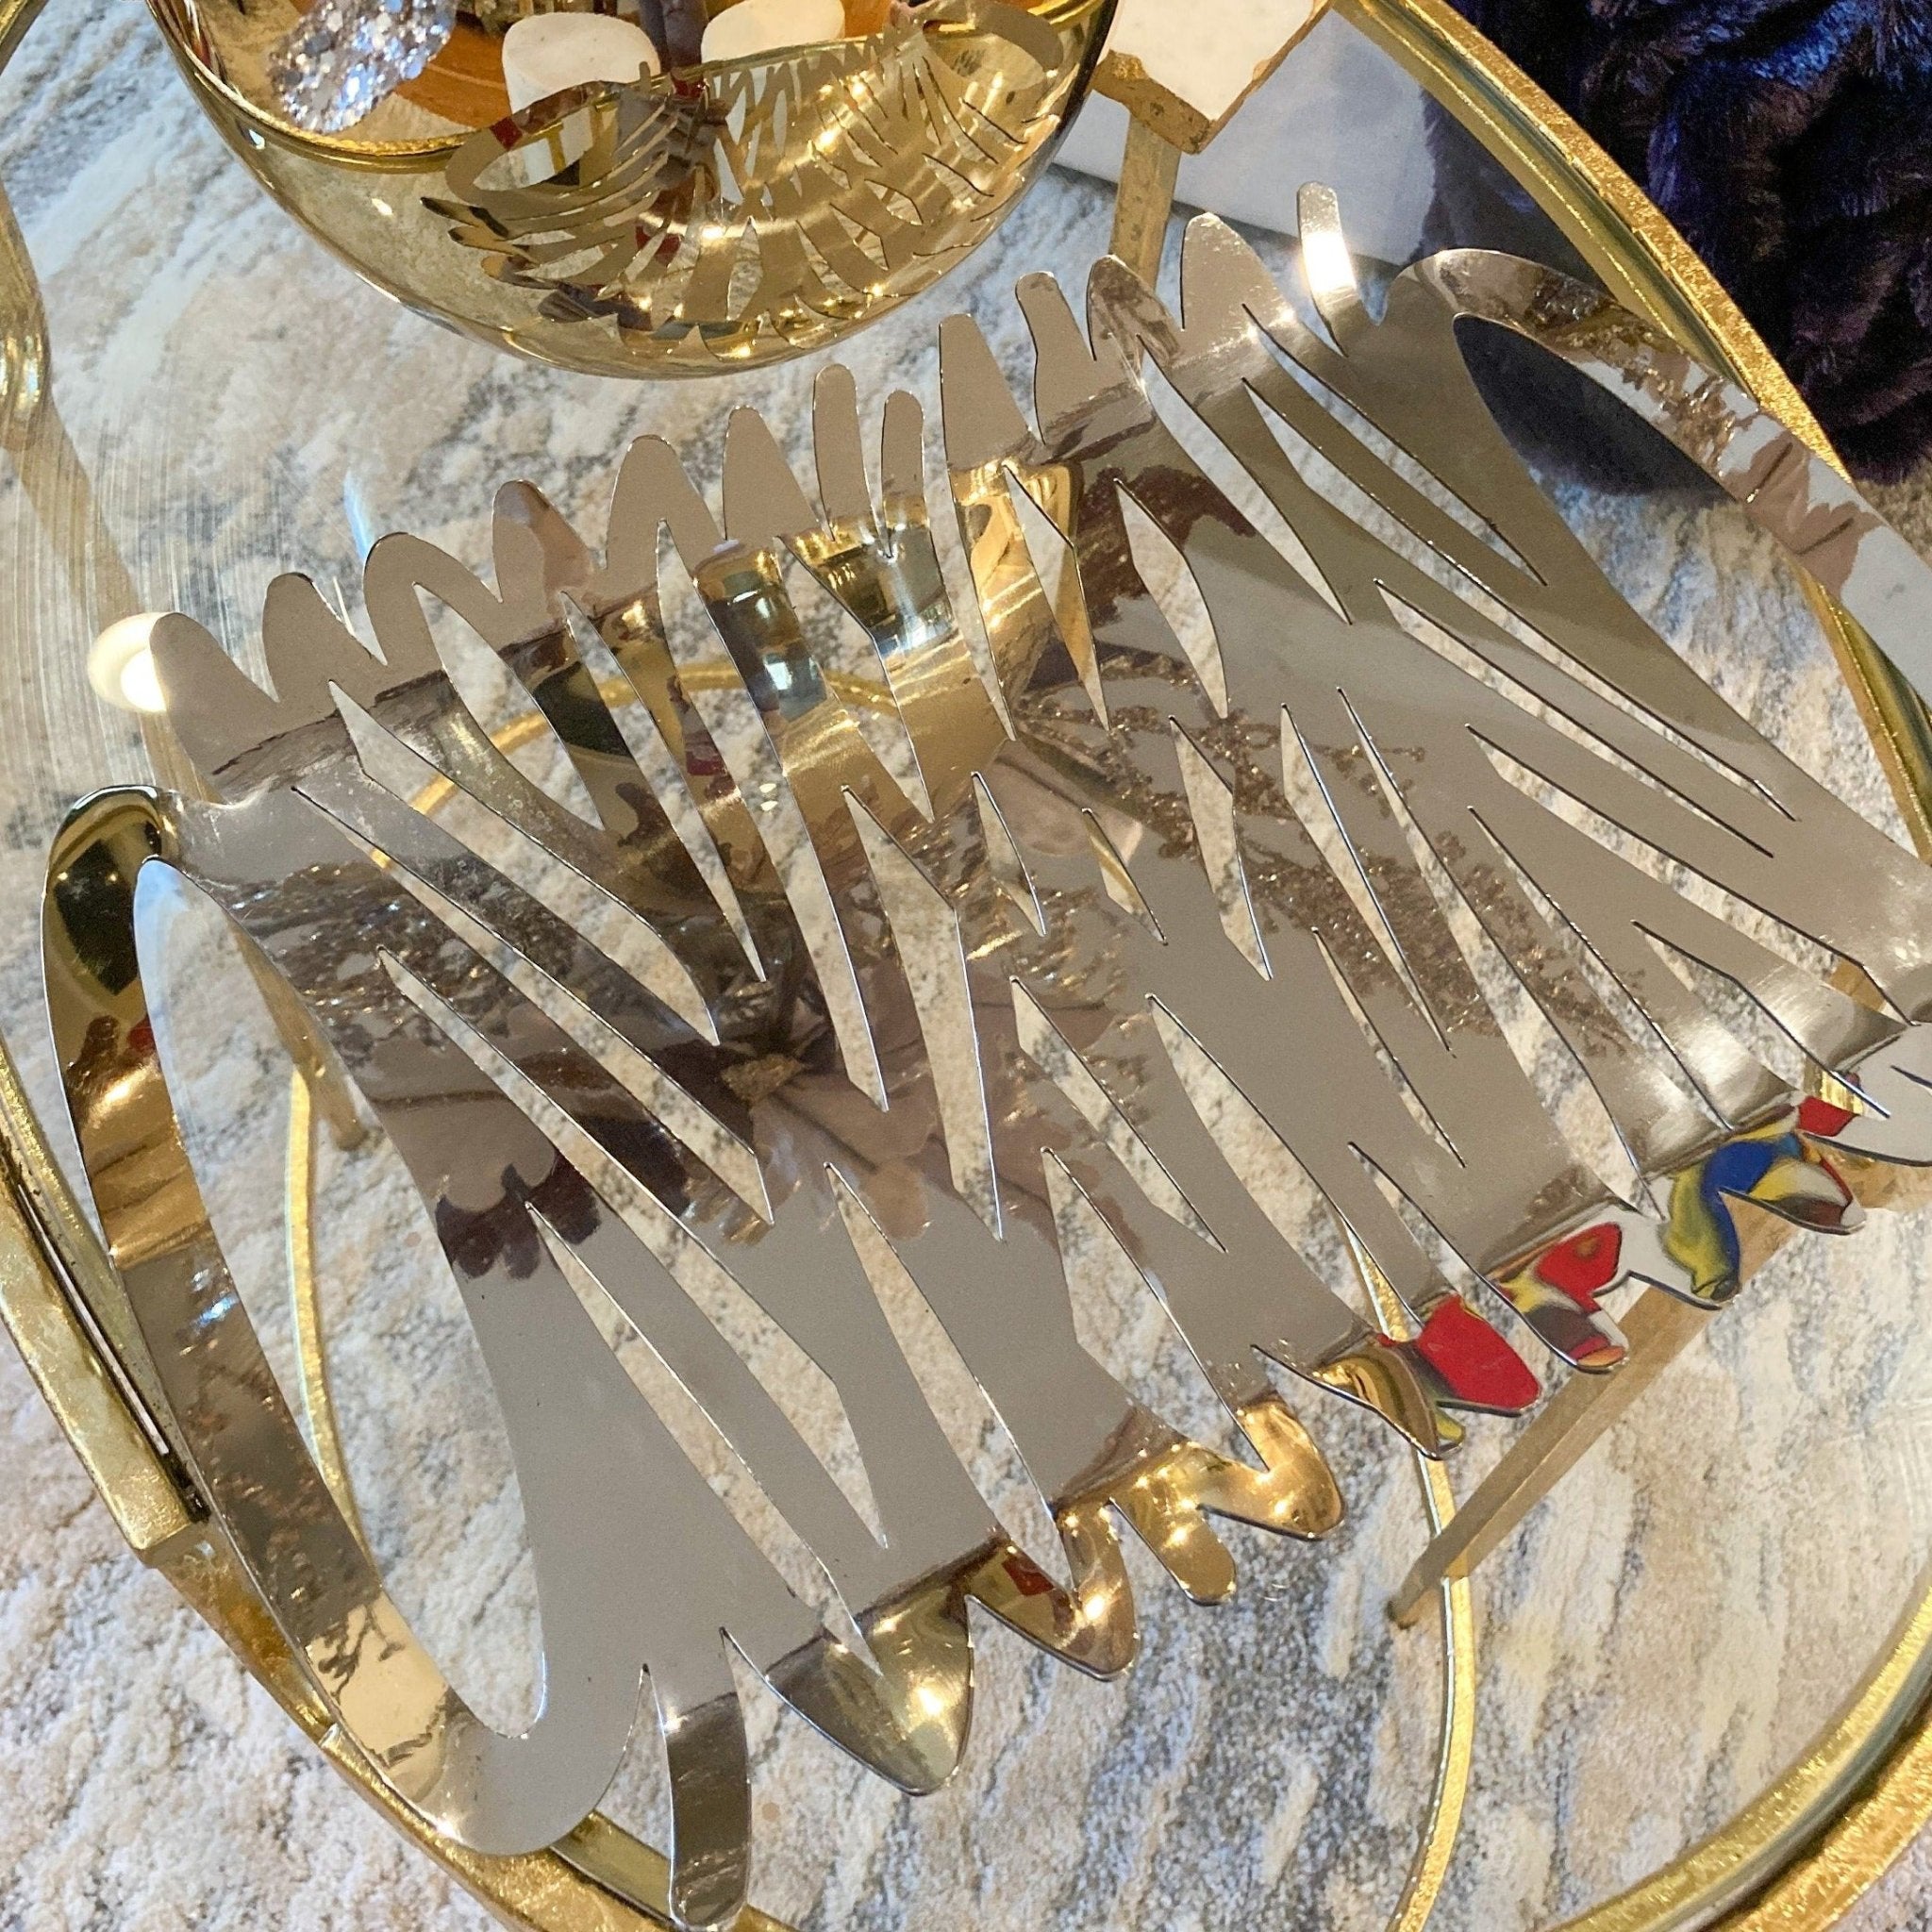 Rectangular Silver Serving Tray | Decorative Tray | Bar Cart Tray | Silver Centerpiece | Snack Tray | Housewarming Gift - DiamondValeDecor